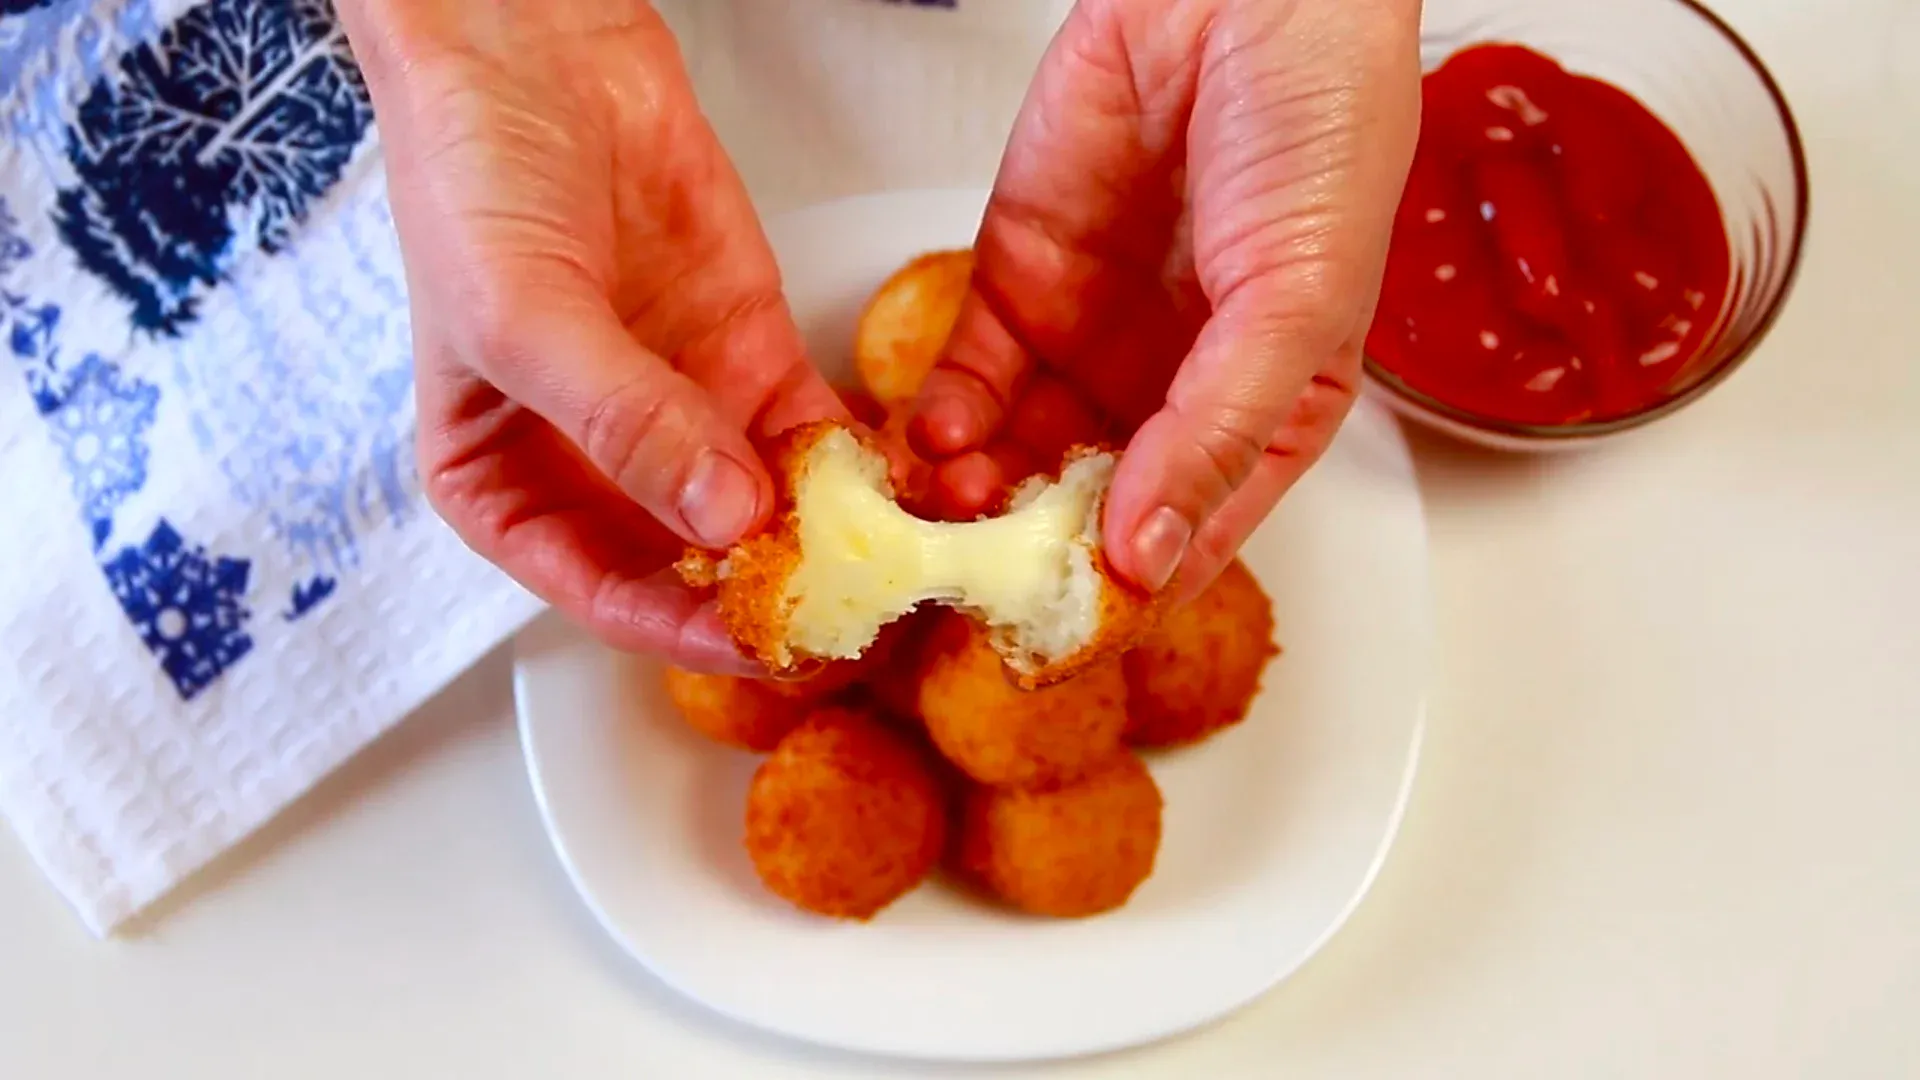 Картофельные шарики имеют аппетитную начинку из расплавленной моцареллы.